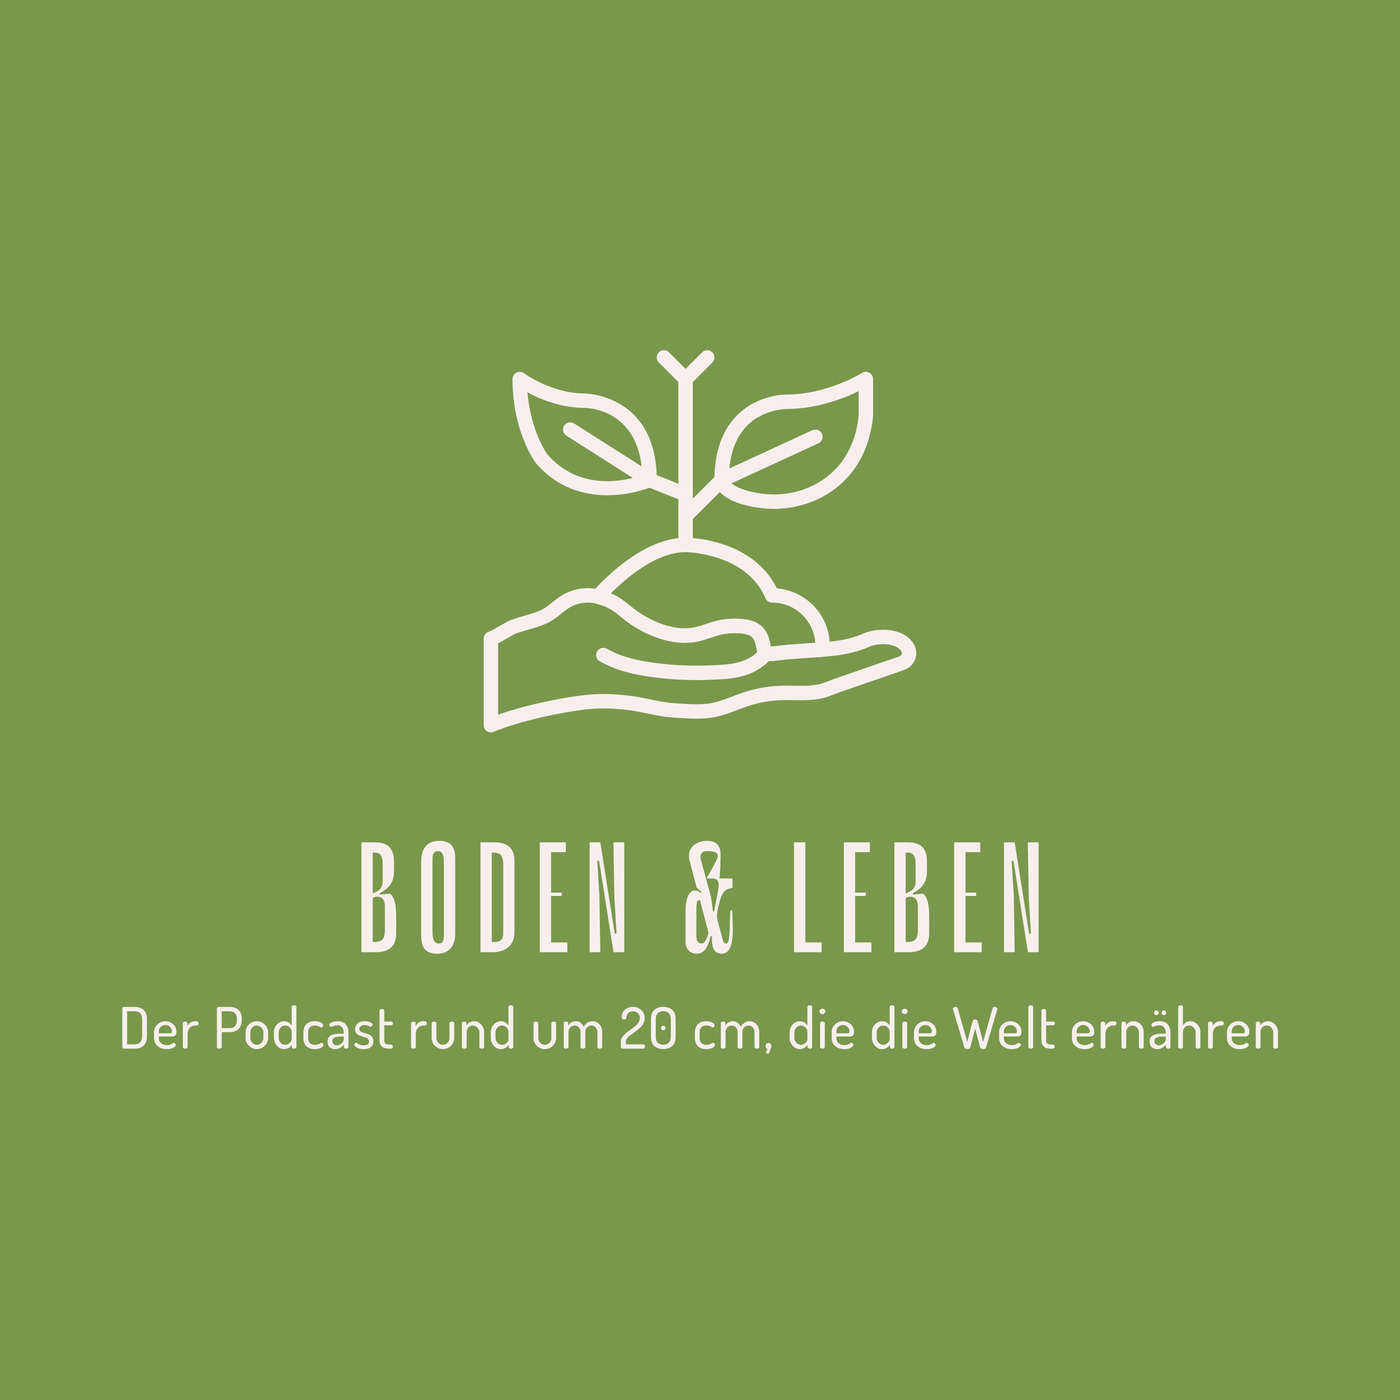 Boden & Leben - Der Podcast rund um 20 cm, die die Welt ernähren!